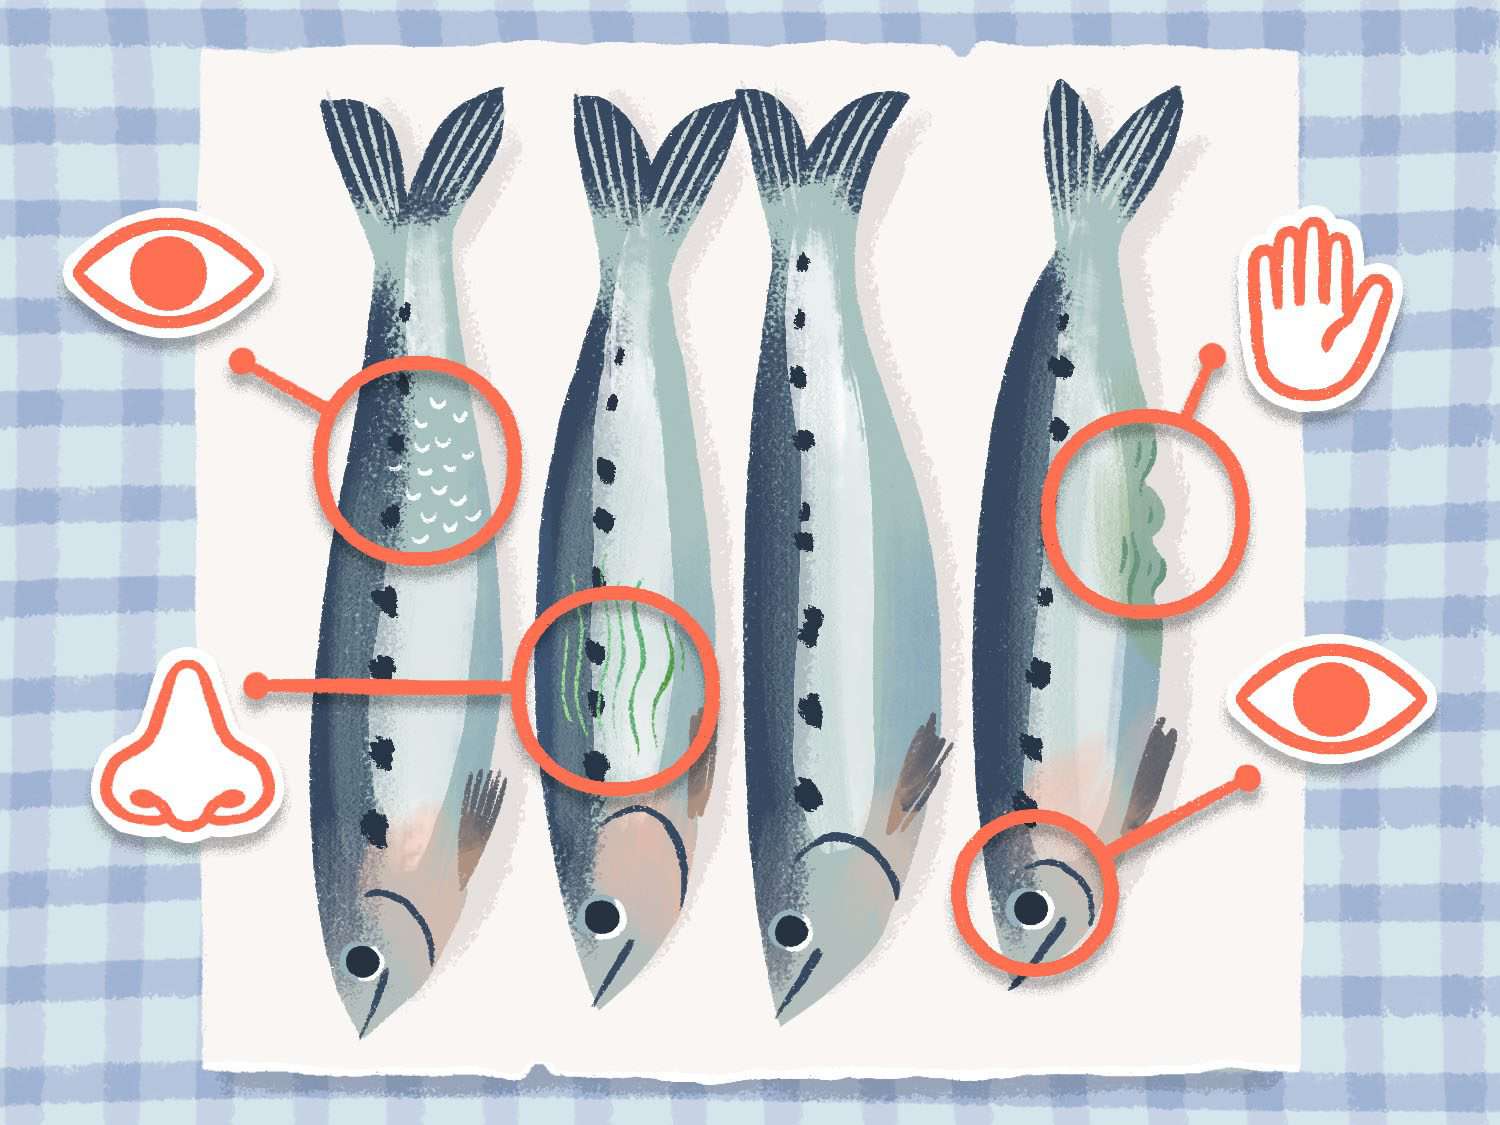 说明四个沙丁鱼的工作表面,各种图标(眼睛、鼻子和手)表示,多种感觉的线索将协助教程清洁沙丁鱼